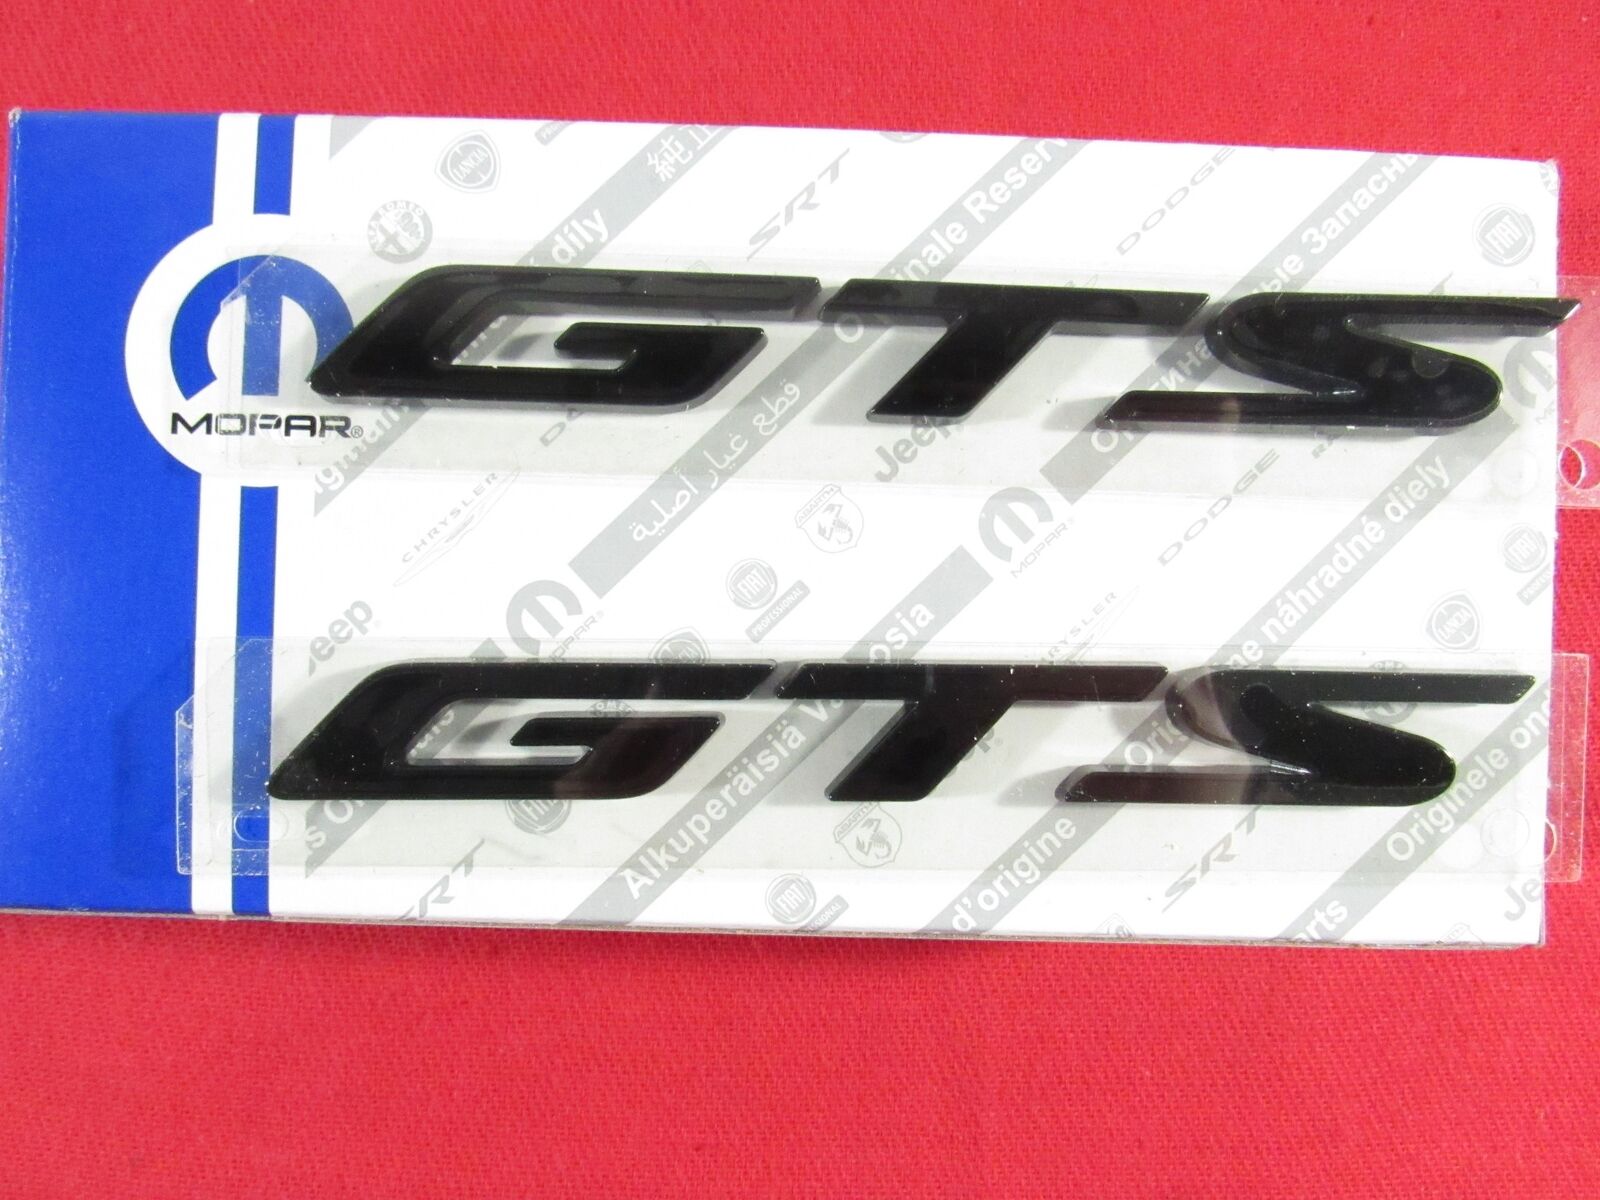 DODGE SRT VIPER Blacked Out GTS Nameplate Emblem Set Of 2 NEW OEM MOPAR